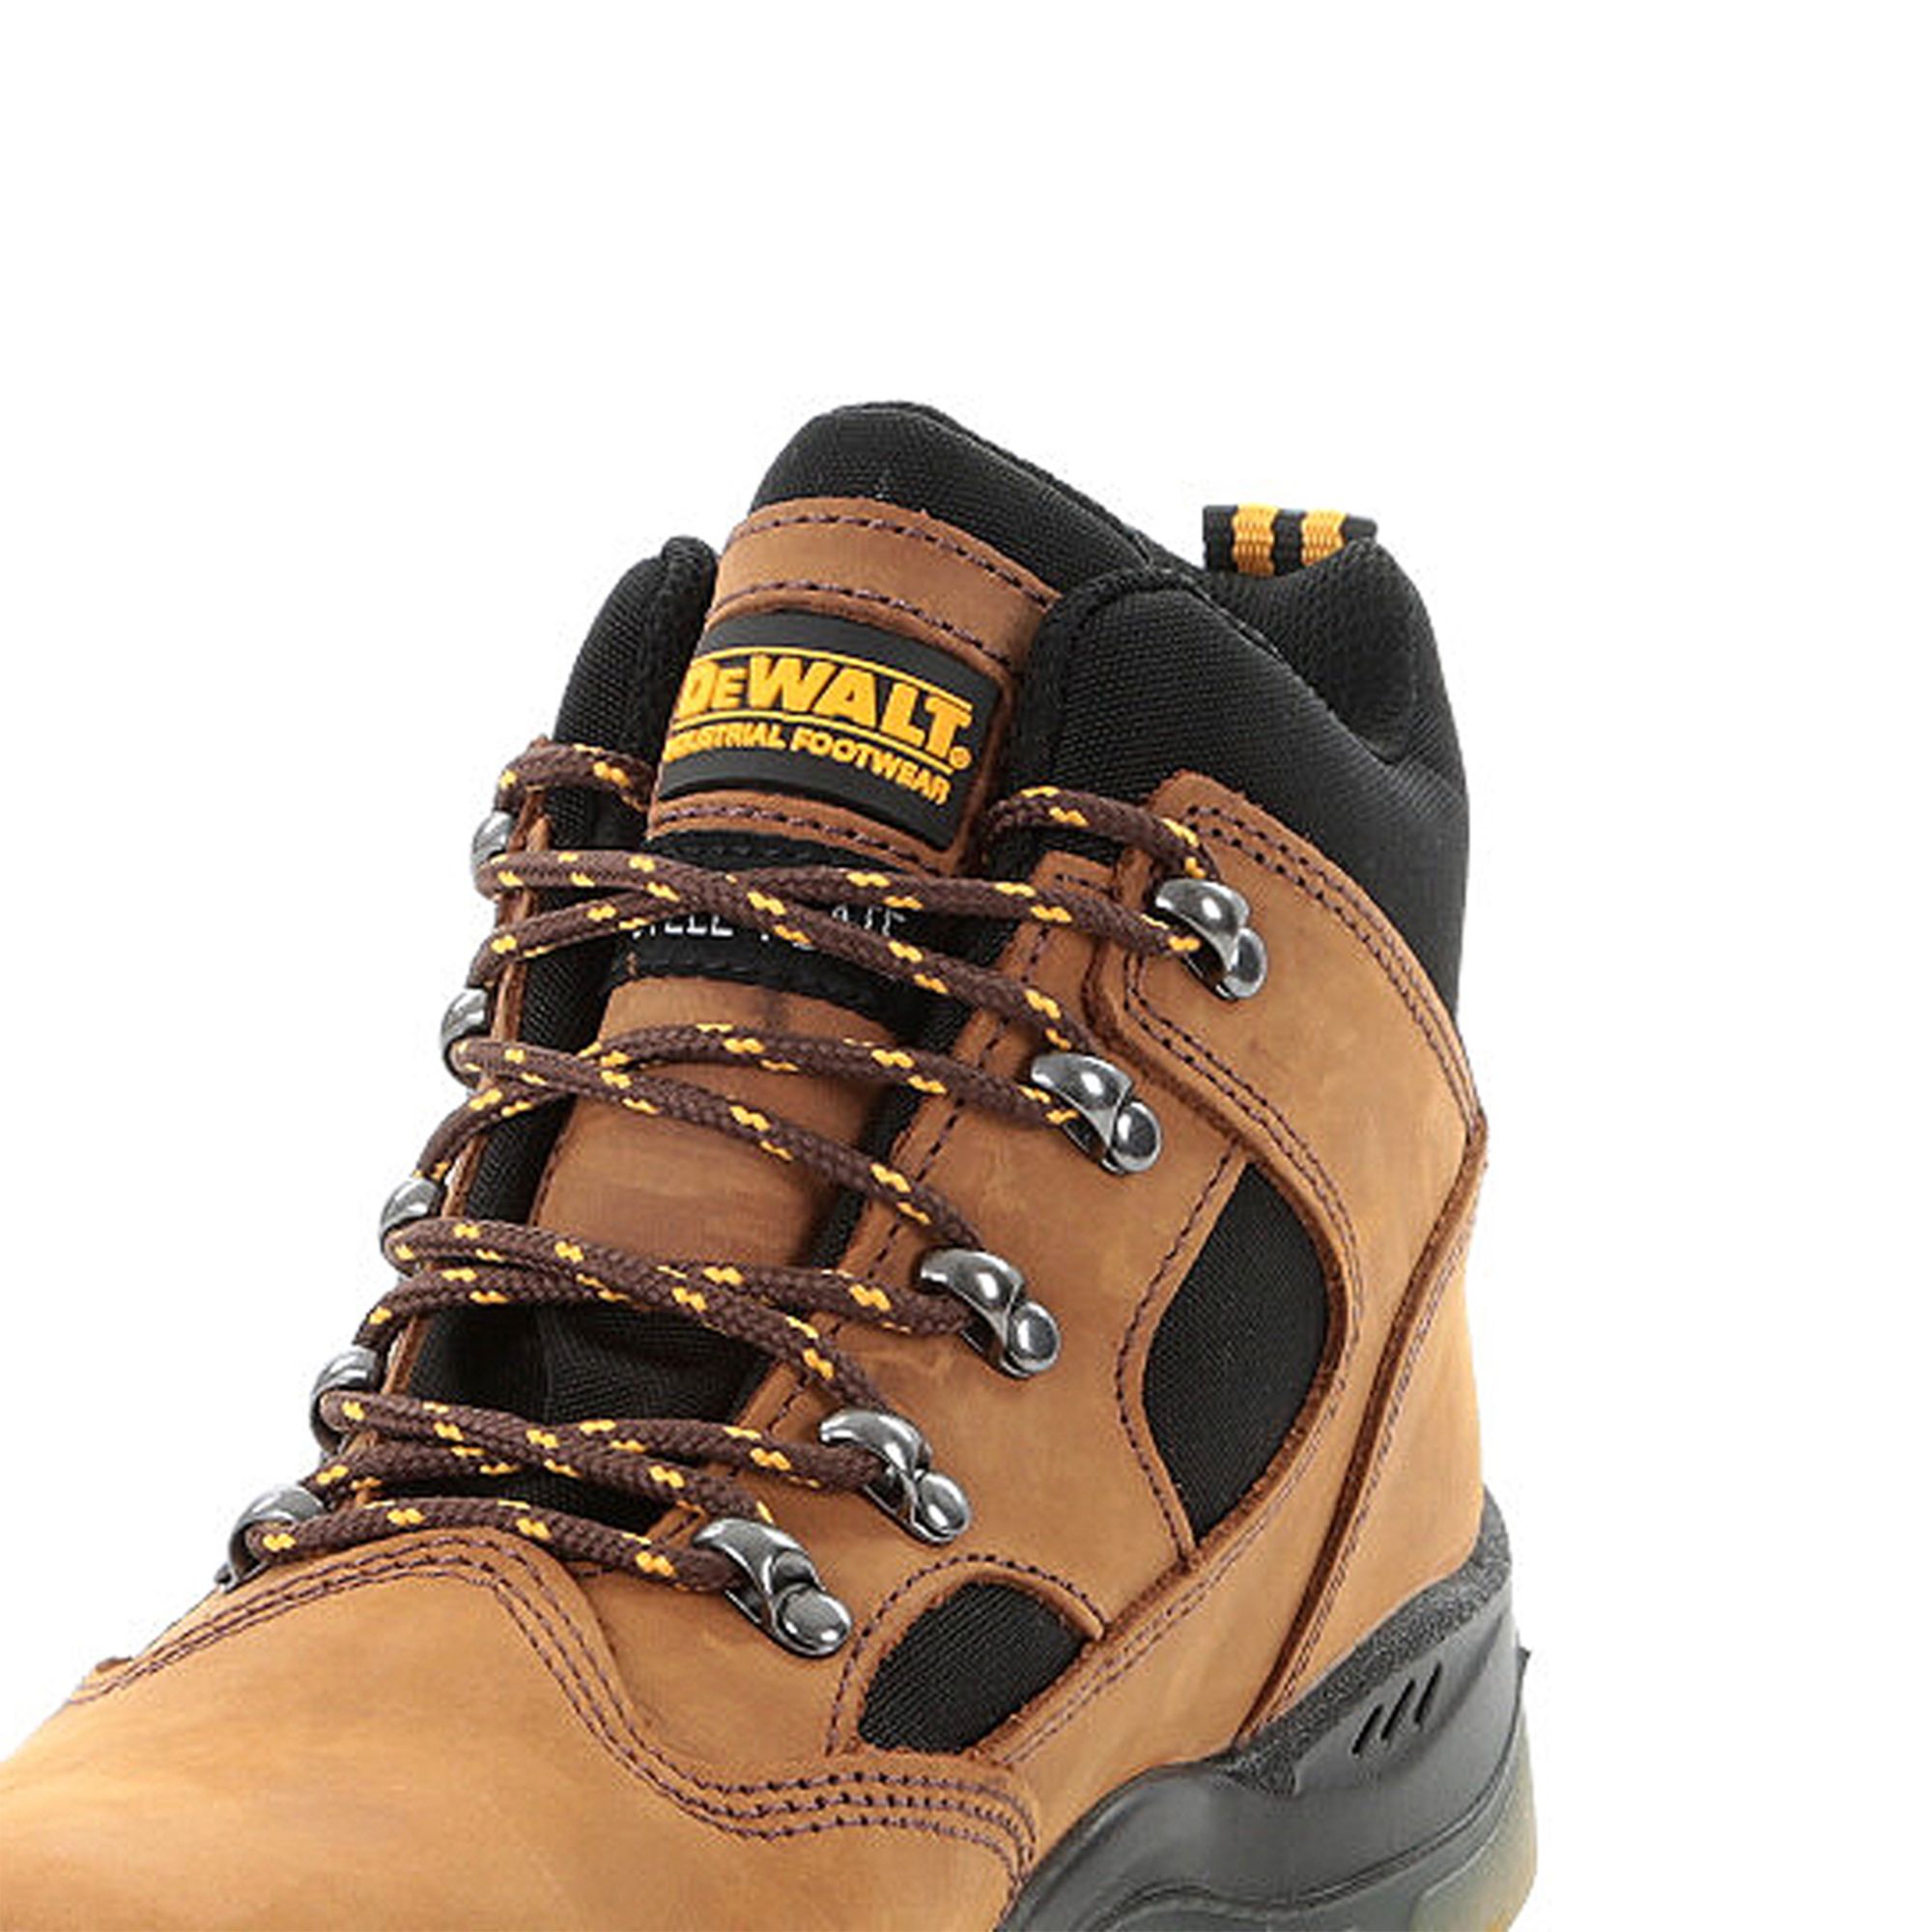 DeWalt Challenger Men's Brown Safety boots, Size 8